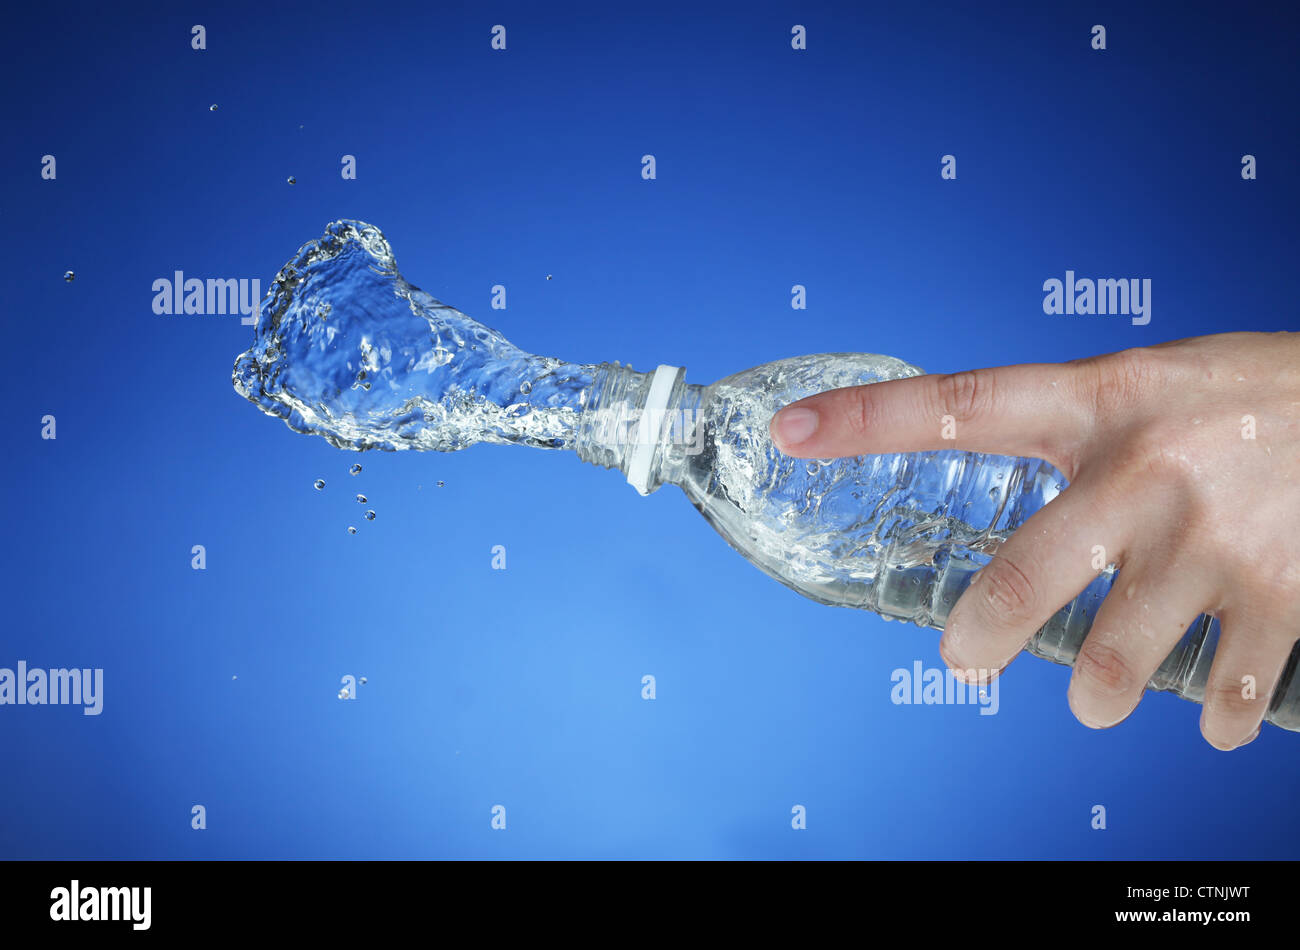 Spritzwasser aus einer Wasserflasche Stockfoto